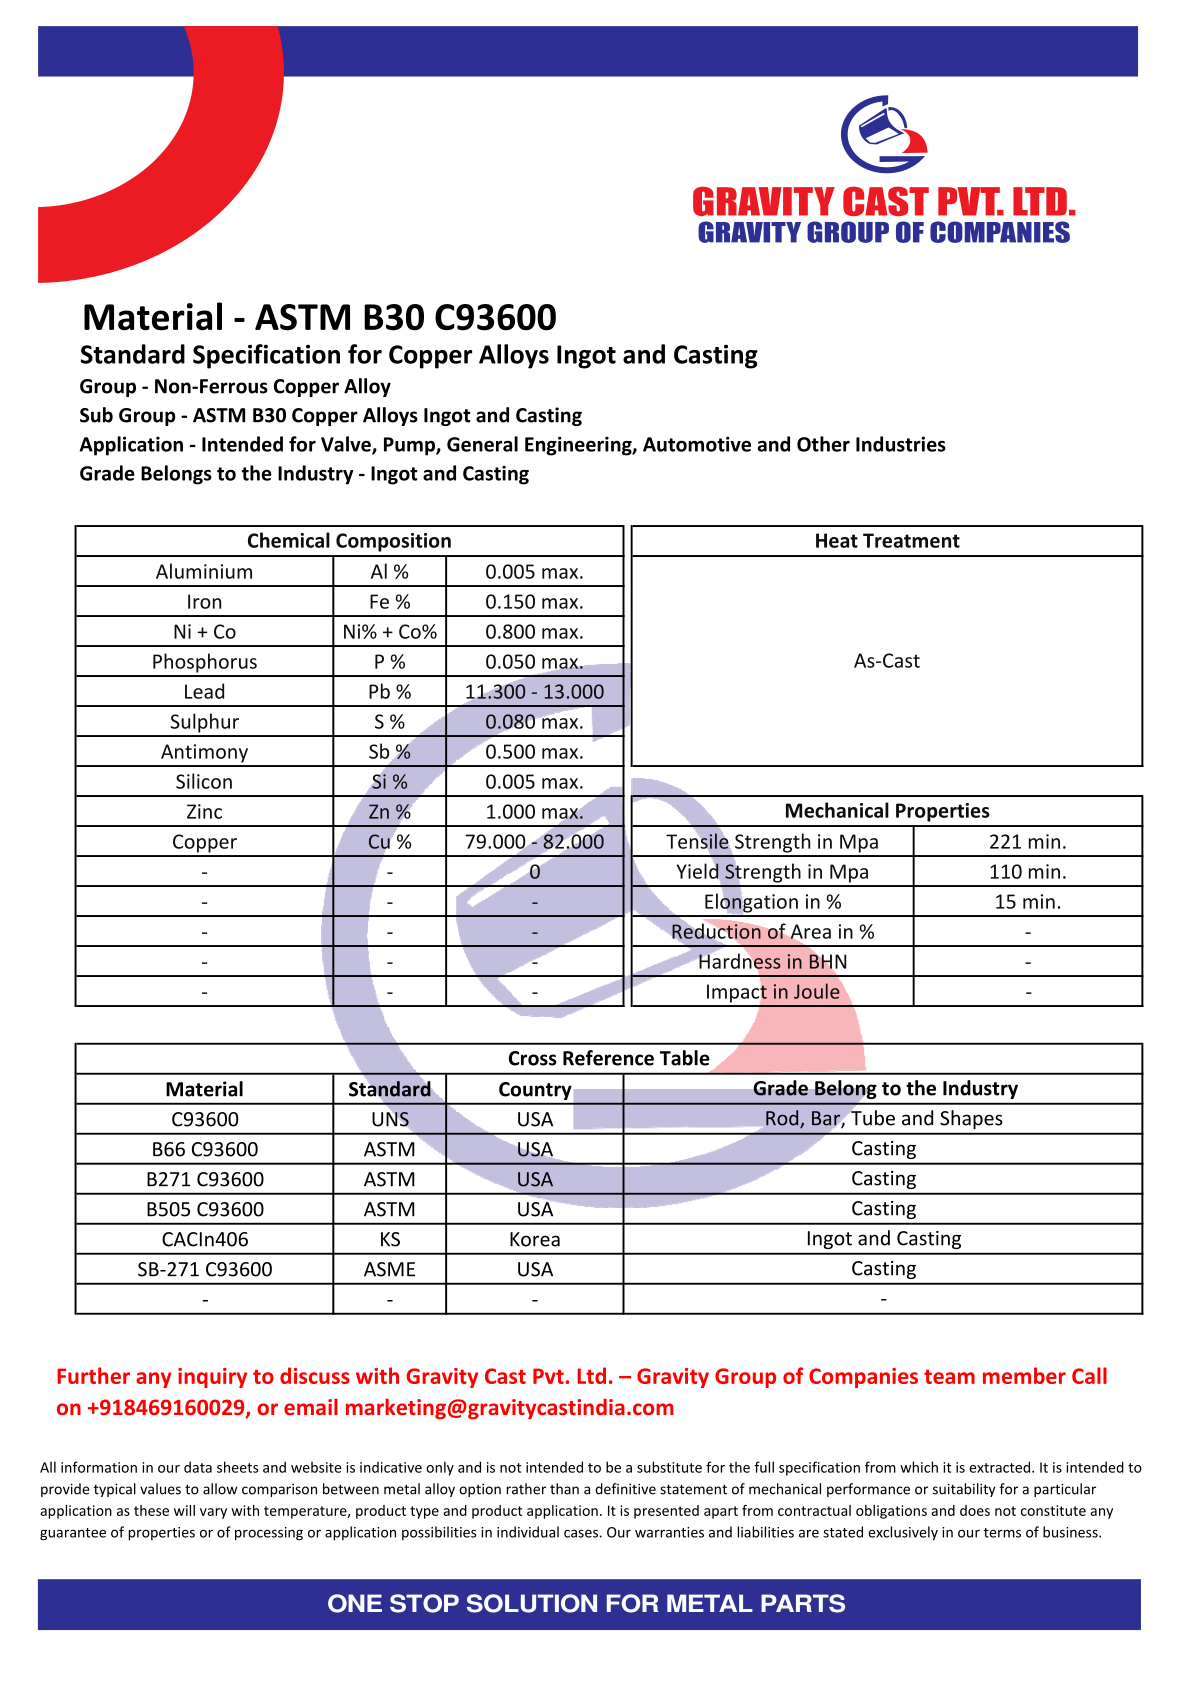 ASTM B30 C93600.pdf